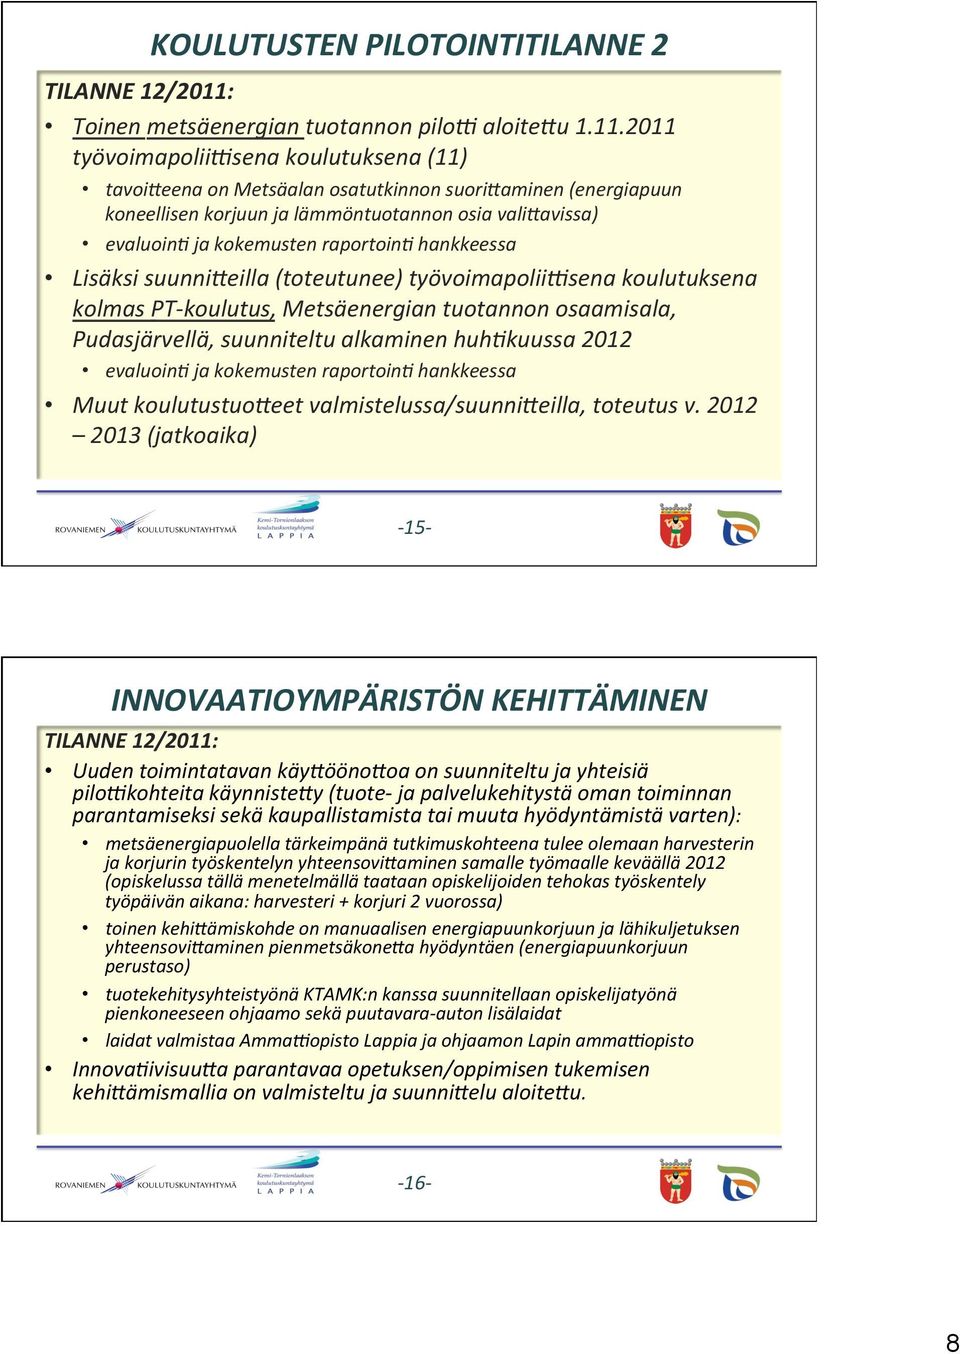 2011 työvoimapolii'sena koulutuksena (11) tavoikeena on Metsäalan osatutkinnon suorikaminen (energiapuun koneellisen korjuun ja lämmöntuotannon osia valikavissa) evaluoin0 ja kokemusten raportoin0